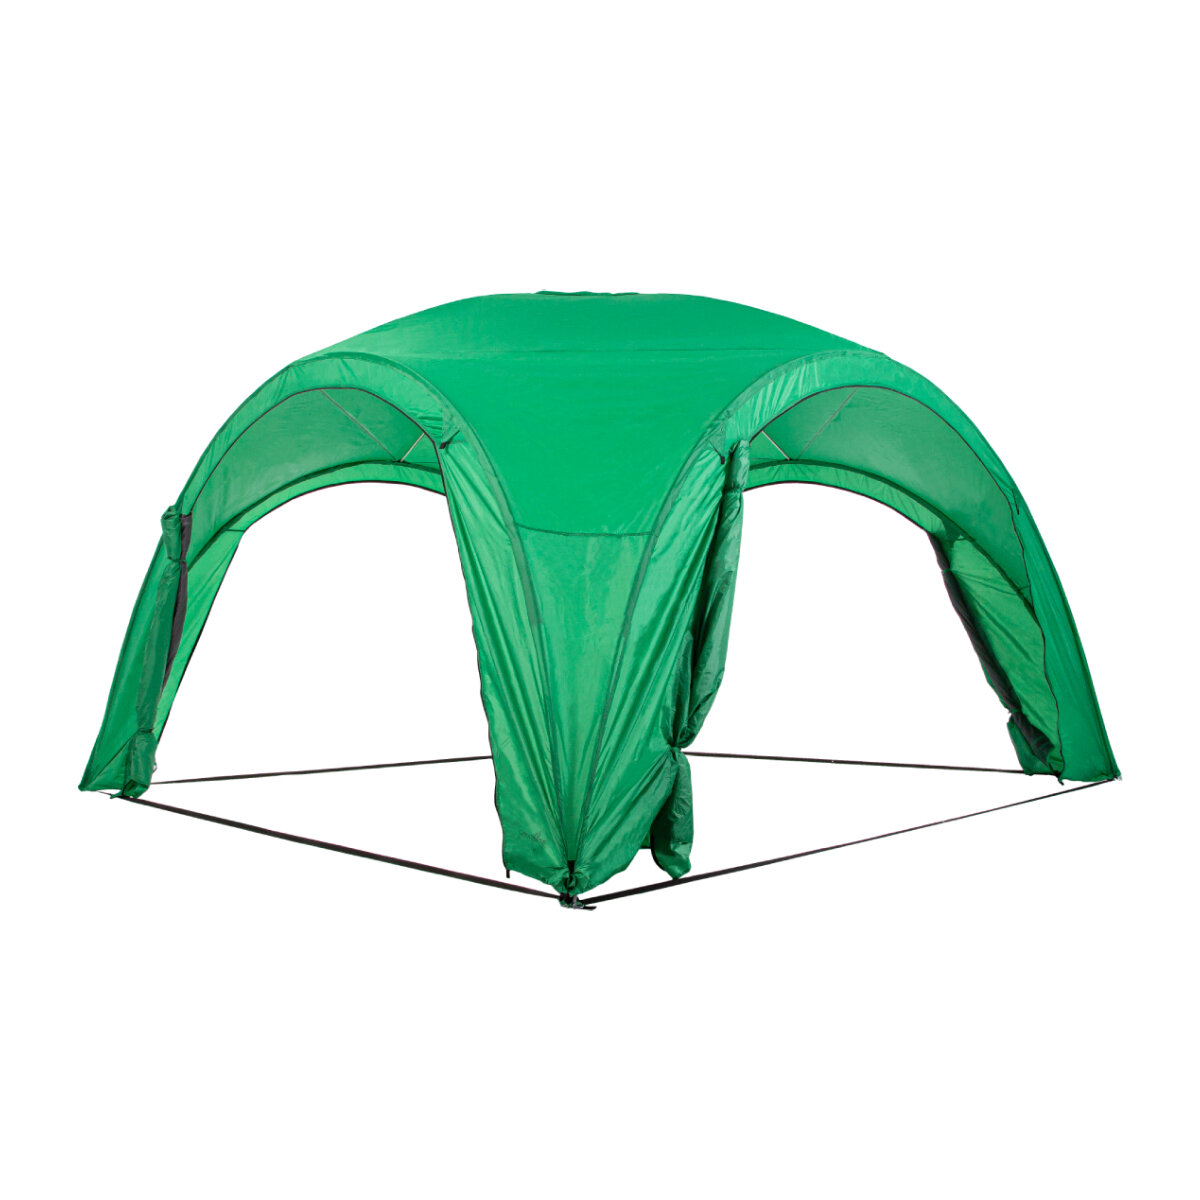 Палатка шатер туристическая быстросборная Green Glade 1264 с москитными сетками для дачи, пикника, кемпинга и отдыха на природе